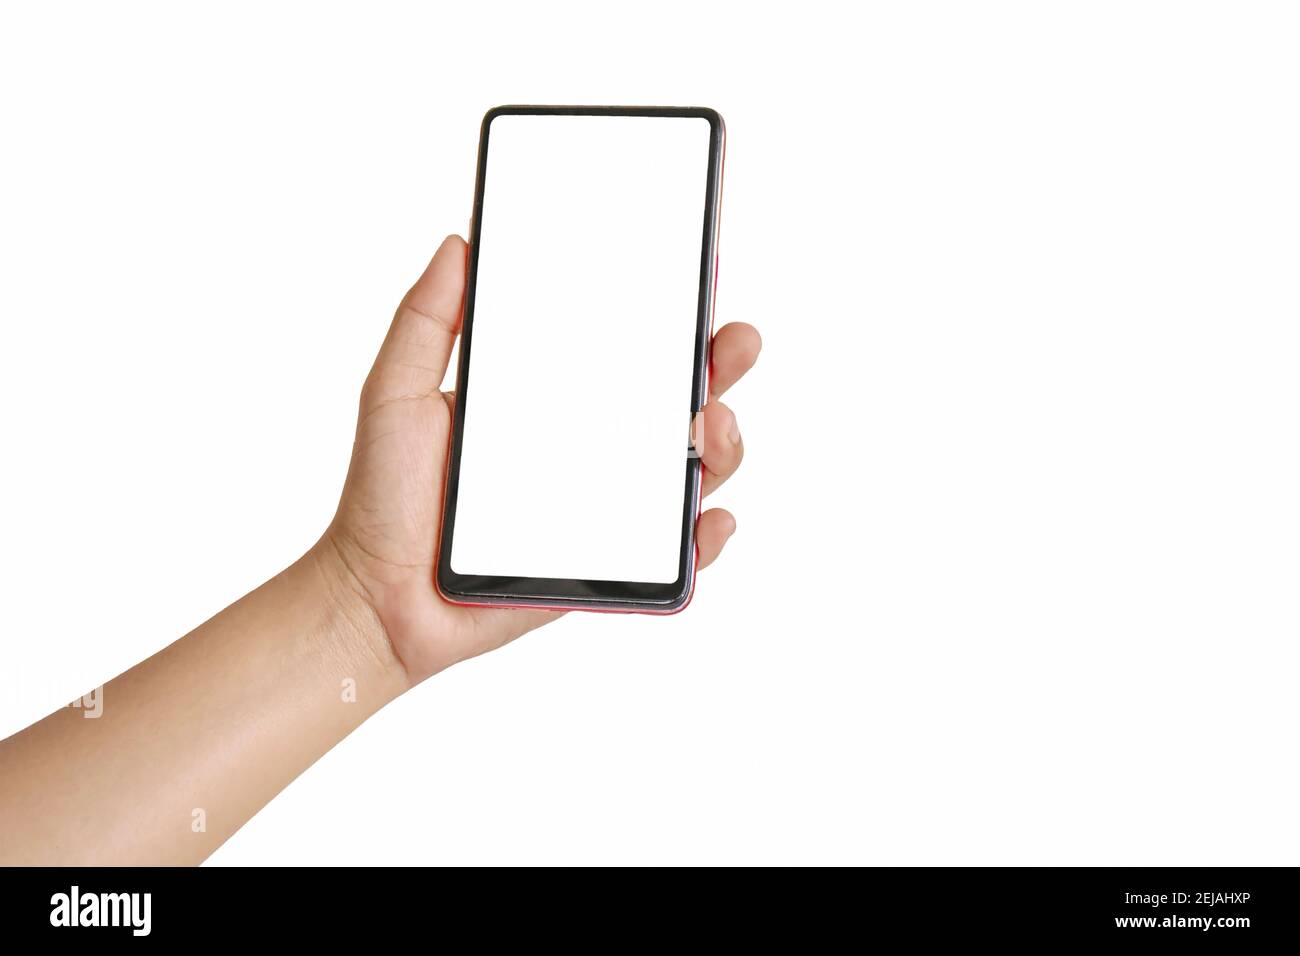 La main tient l'écran blanc, le téléphone portable est isolé sur un fond blanc. Banque D'Images